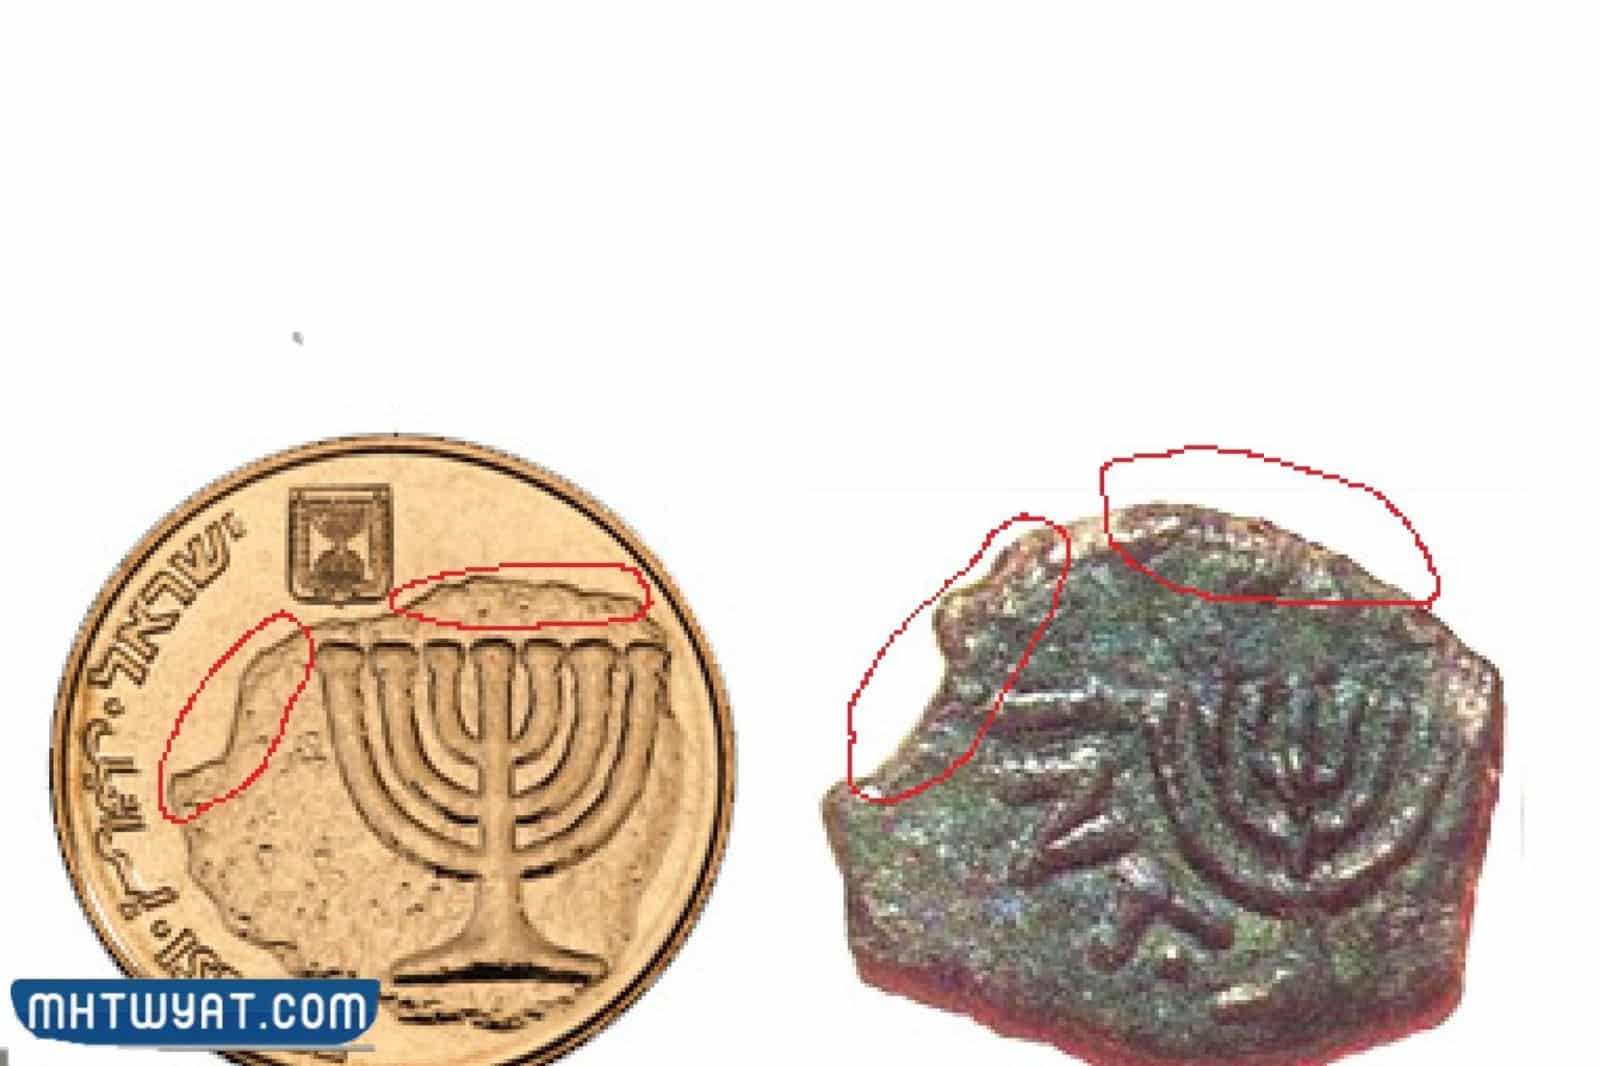 خريطة إسرائيل الكبرى مرسومة على العملة اليهودية